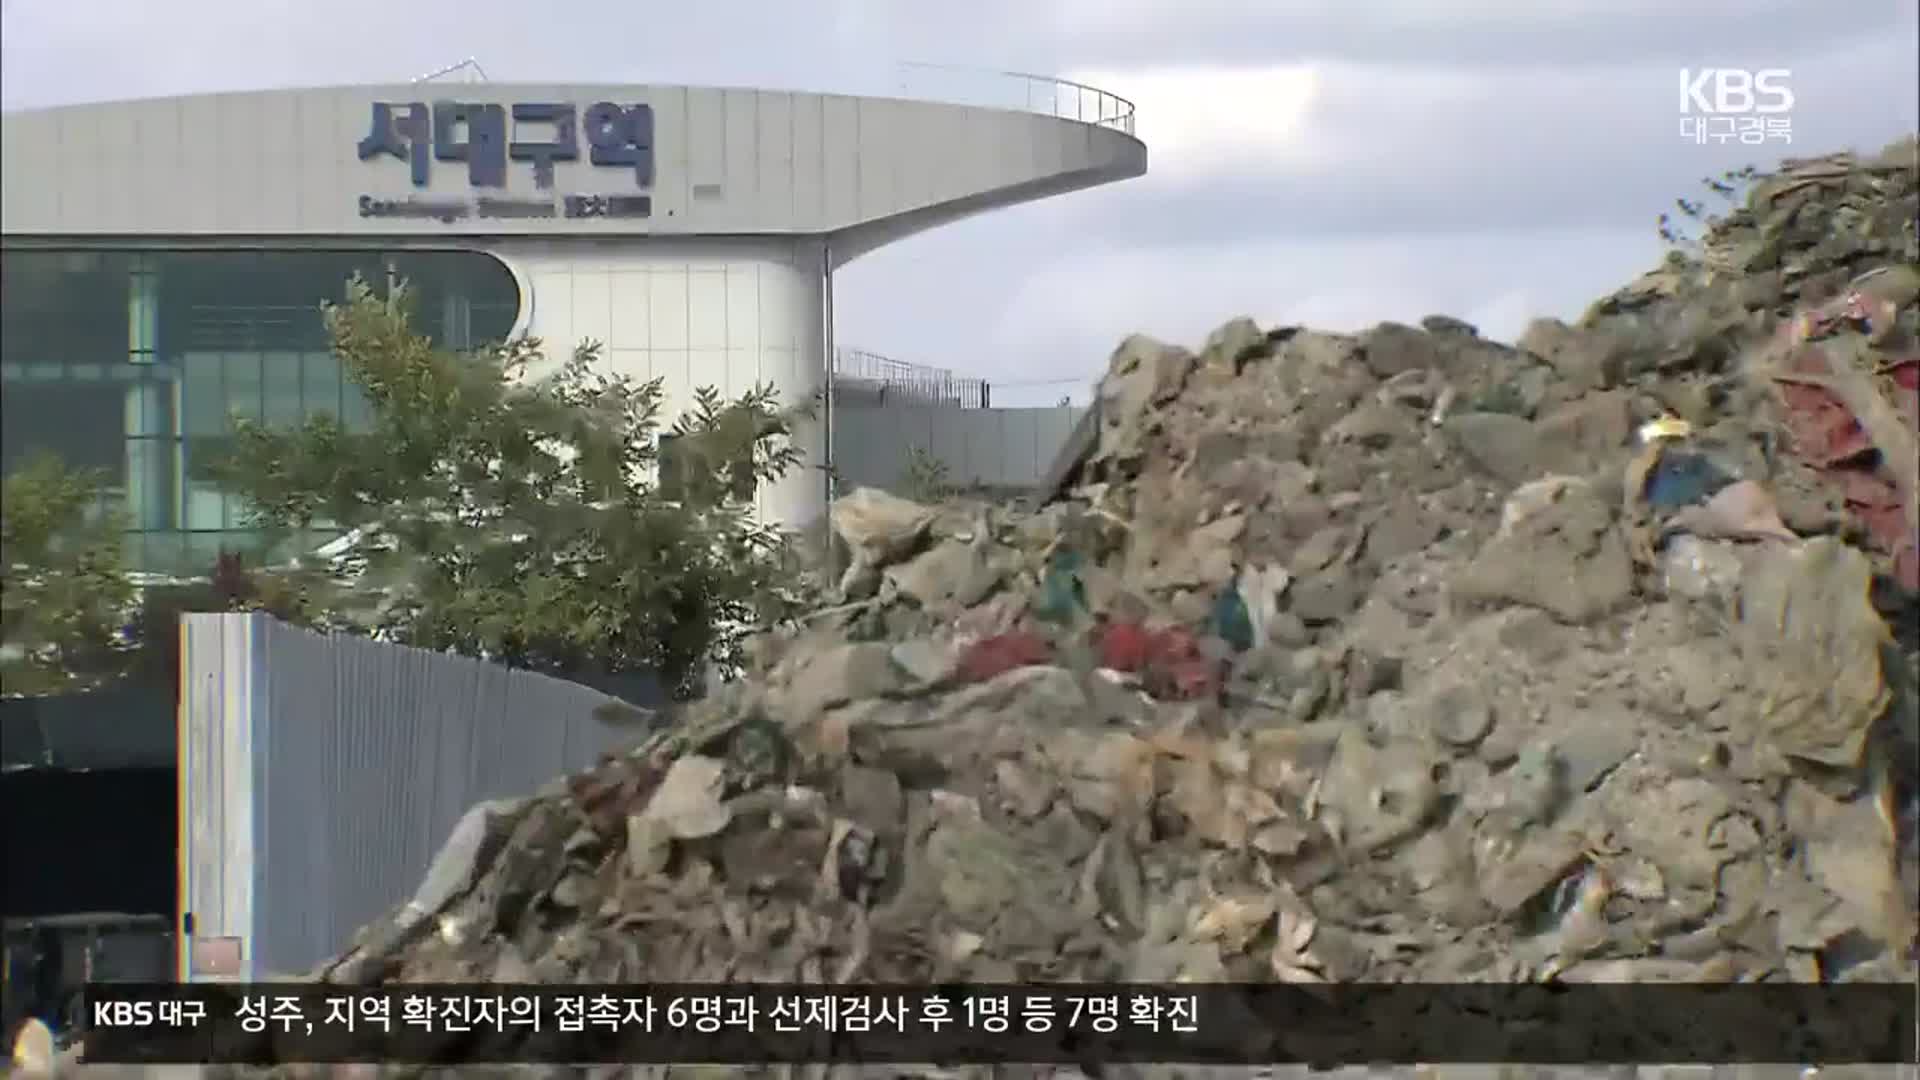 [쓰레기더미 위 KTX역]① 서대구역사 아래 수십만톤 쓰레기…부적정 처리 논란